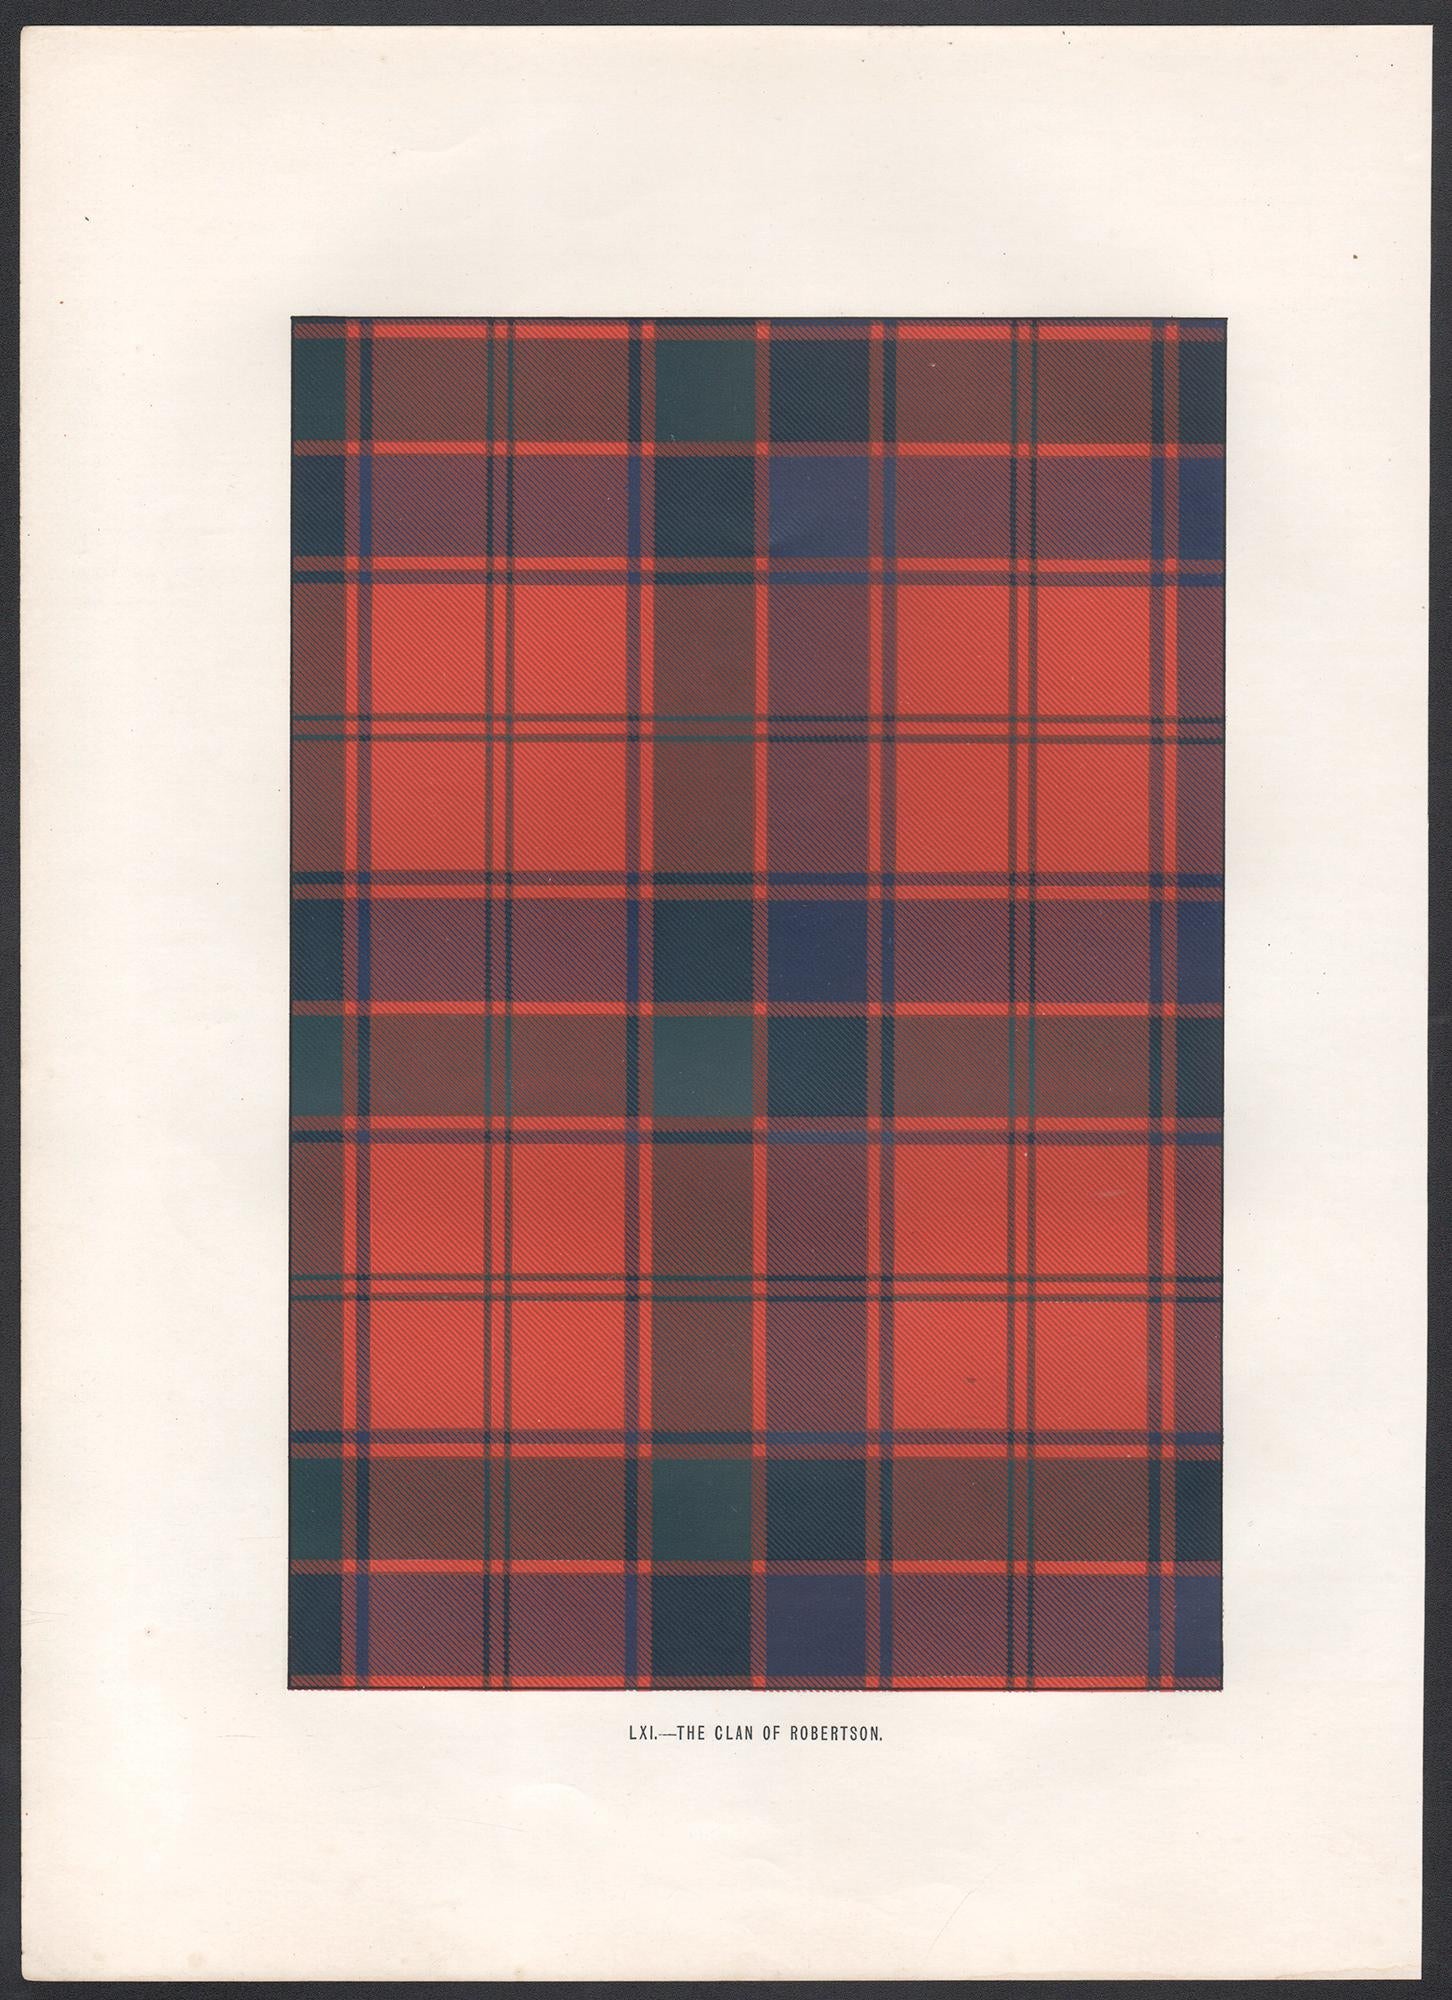 Lithographie du clan de Robertson (tartan), Écosse écossaise de conception artistique - Print de Unknown